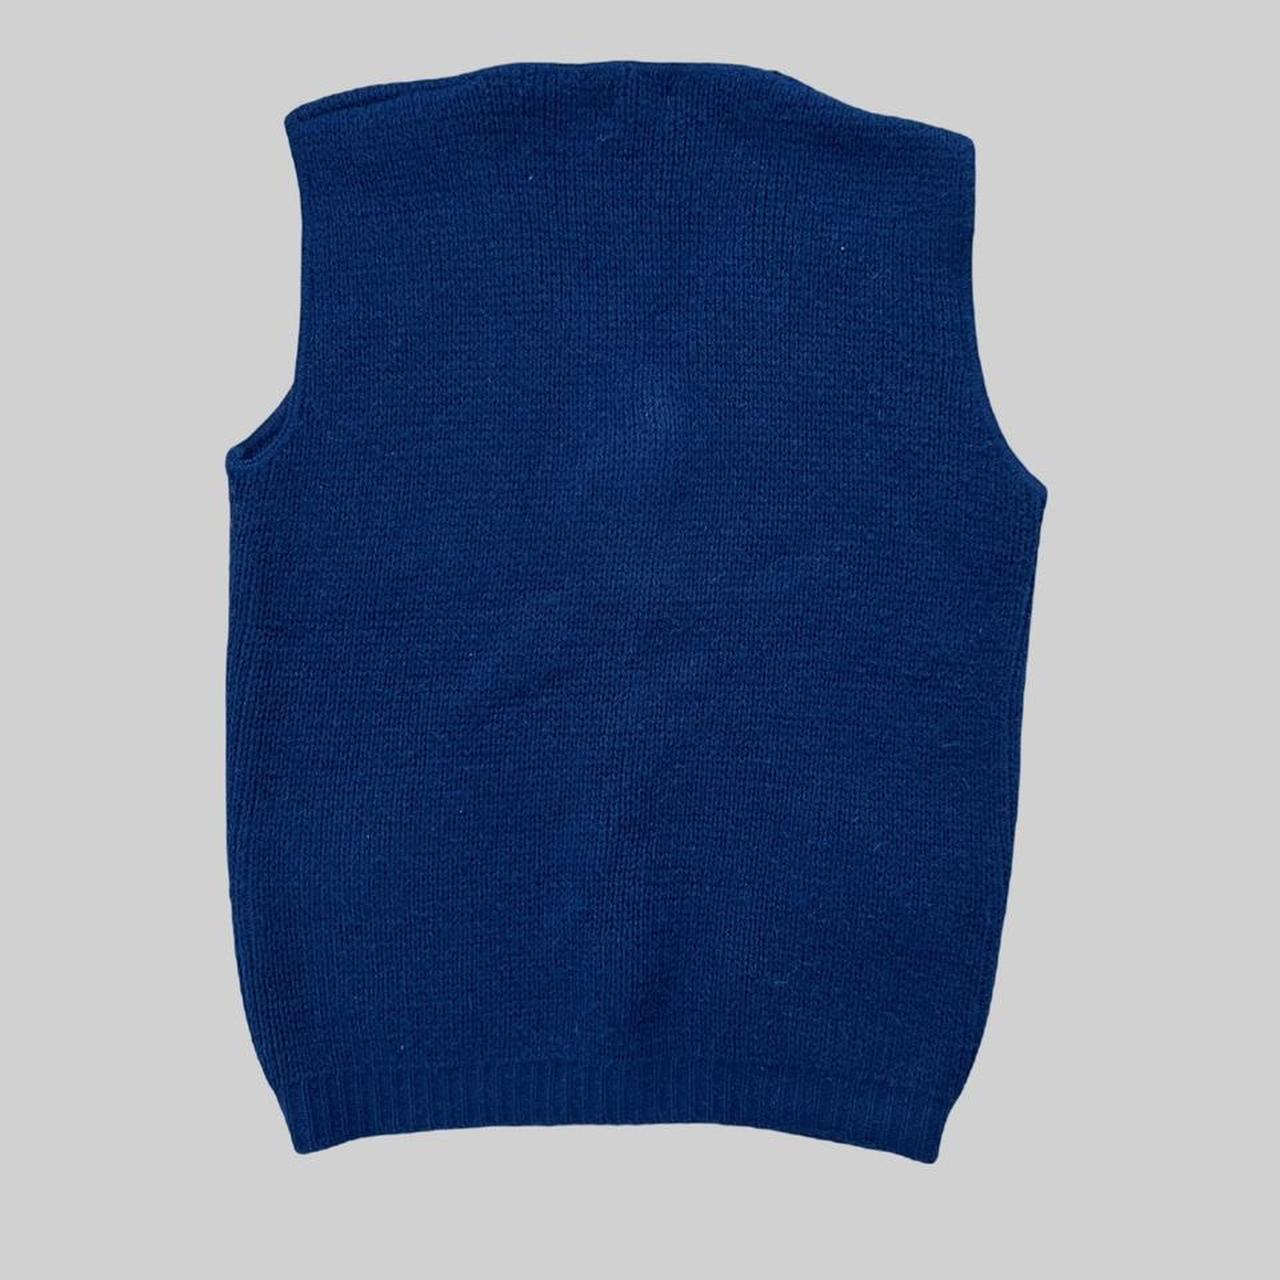 Vintage cardigan vest 💙 Super soft and comfortable. ... - Depop